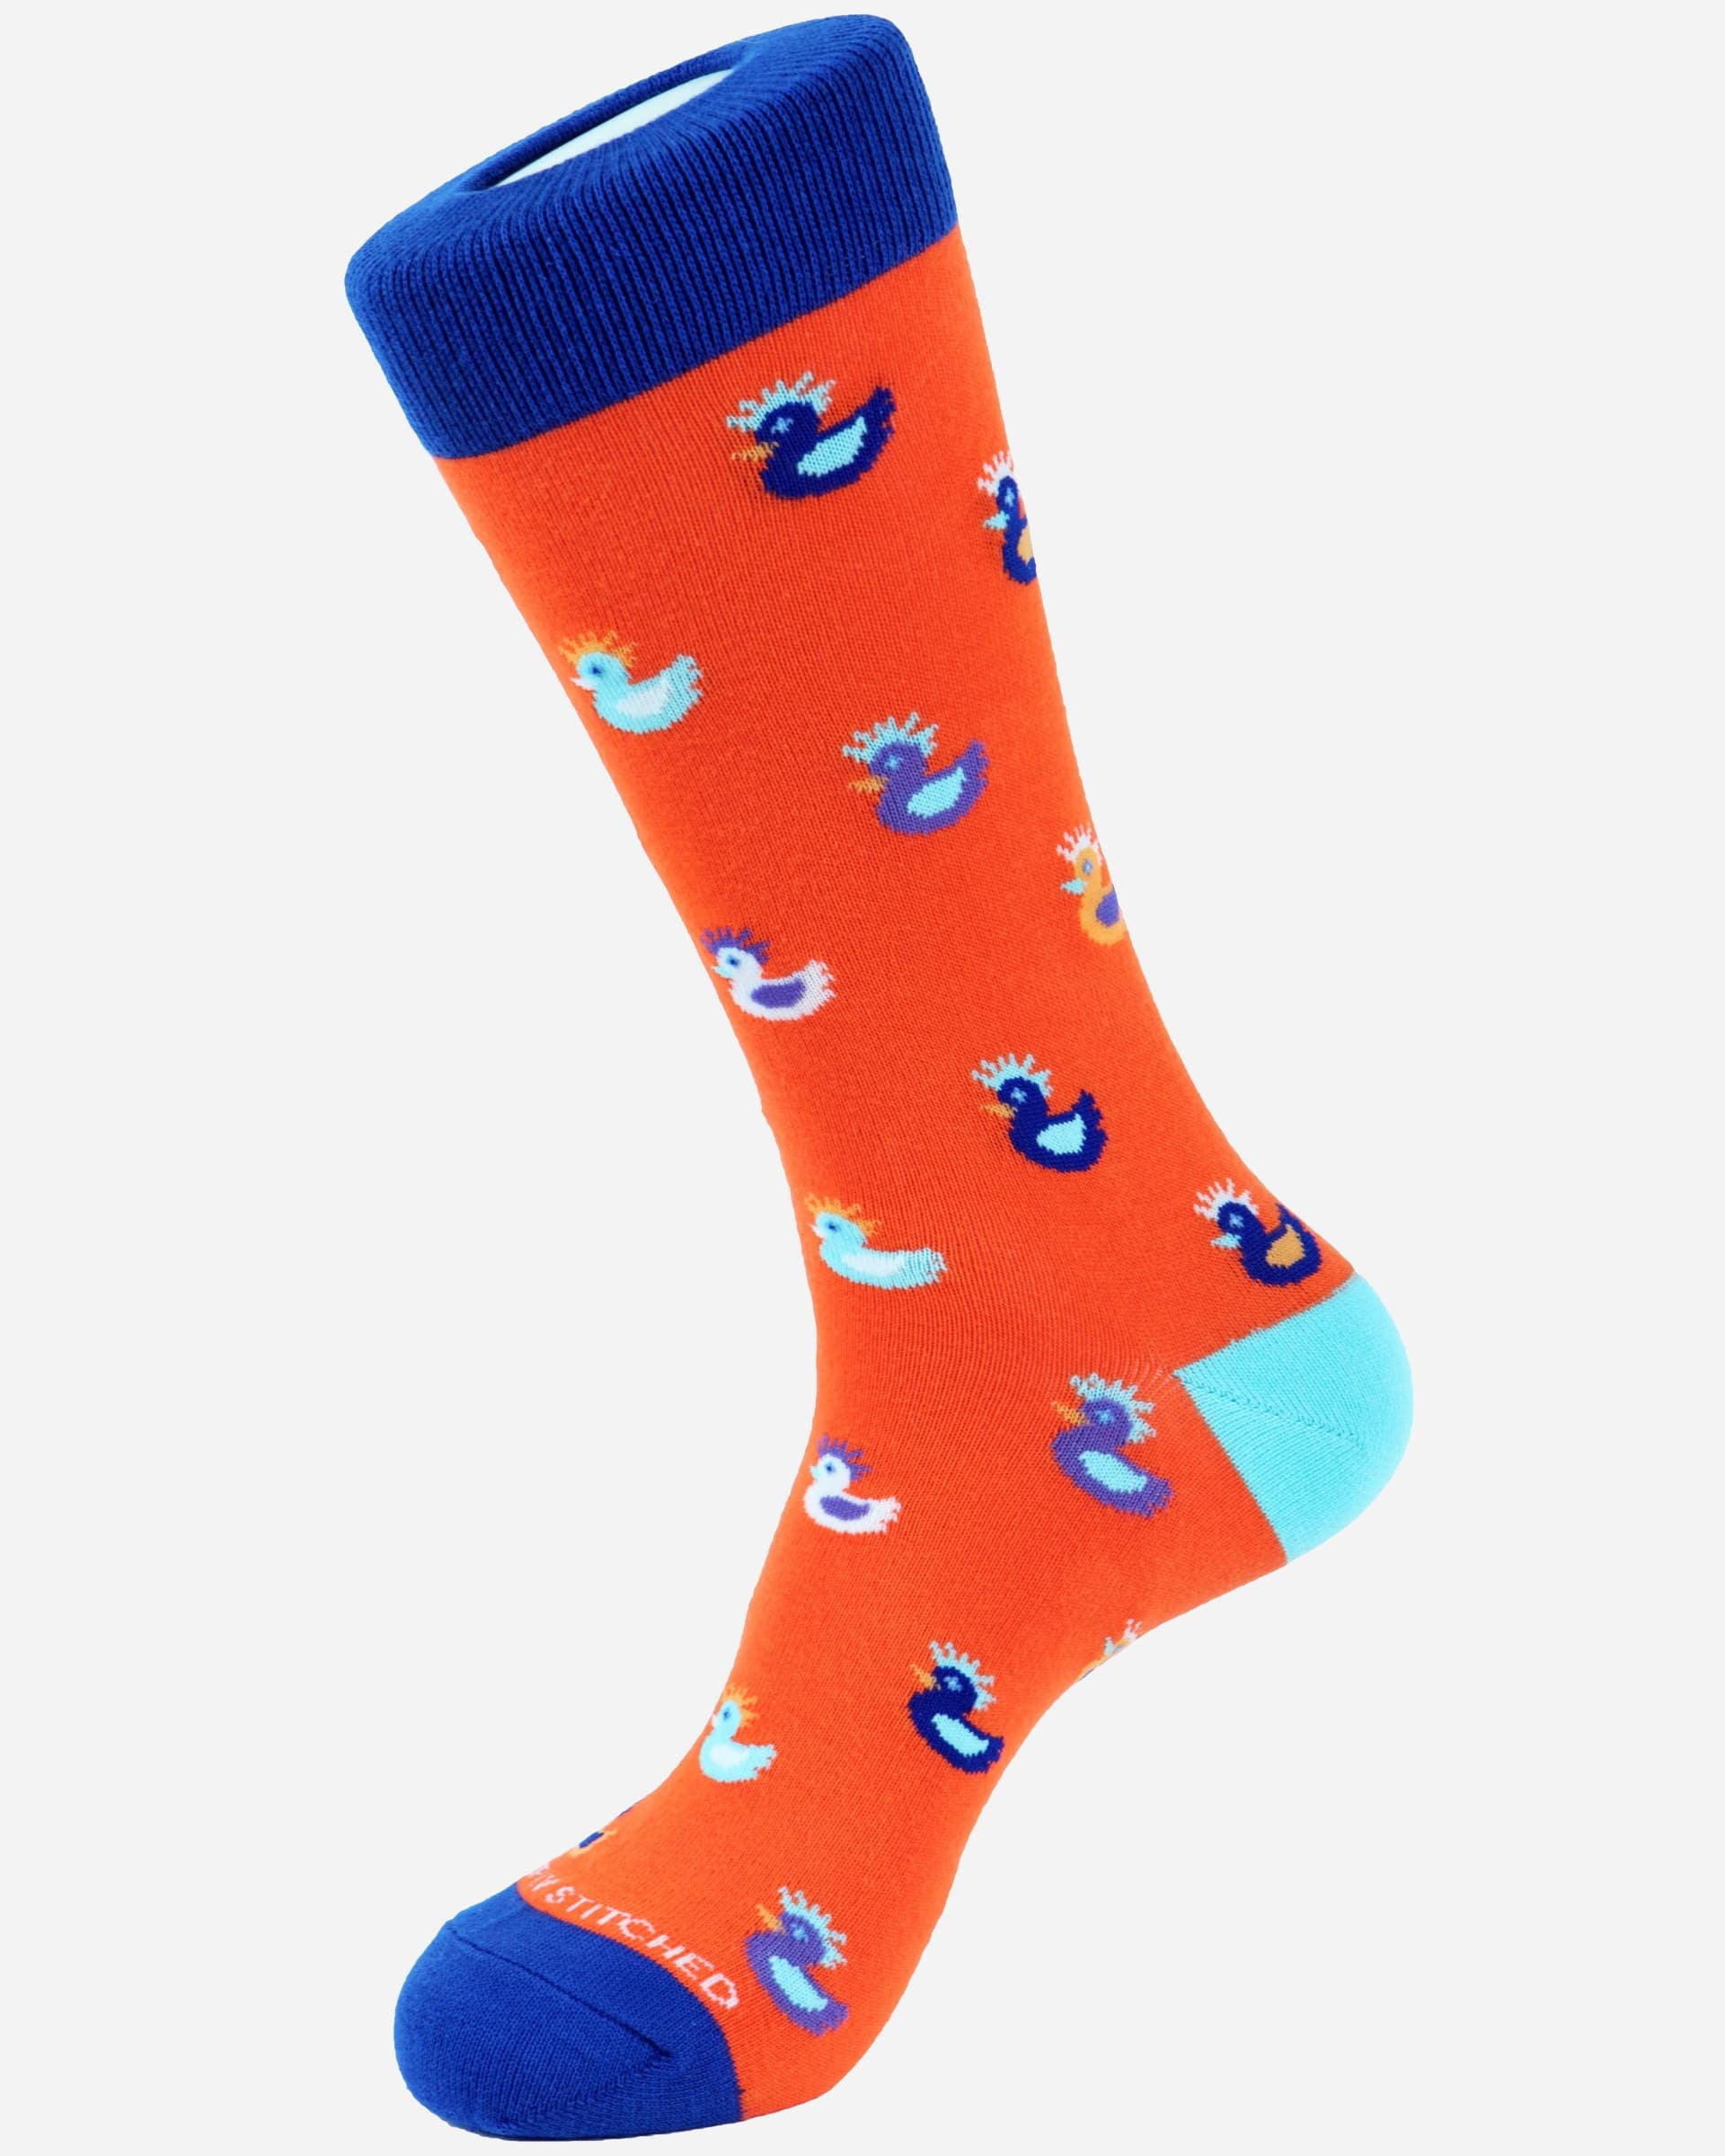 Rubber Ducky Socks - Men's Socks at Menzclub